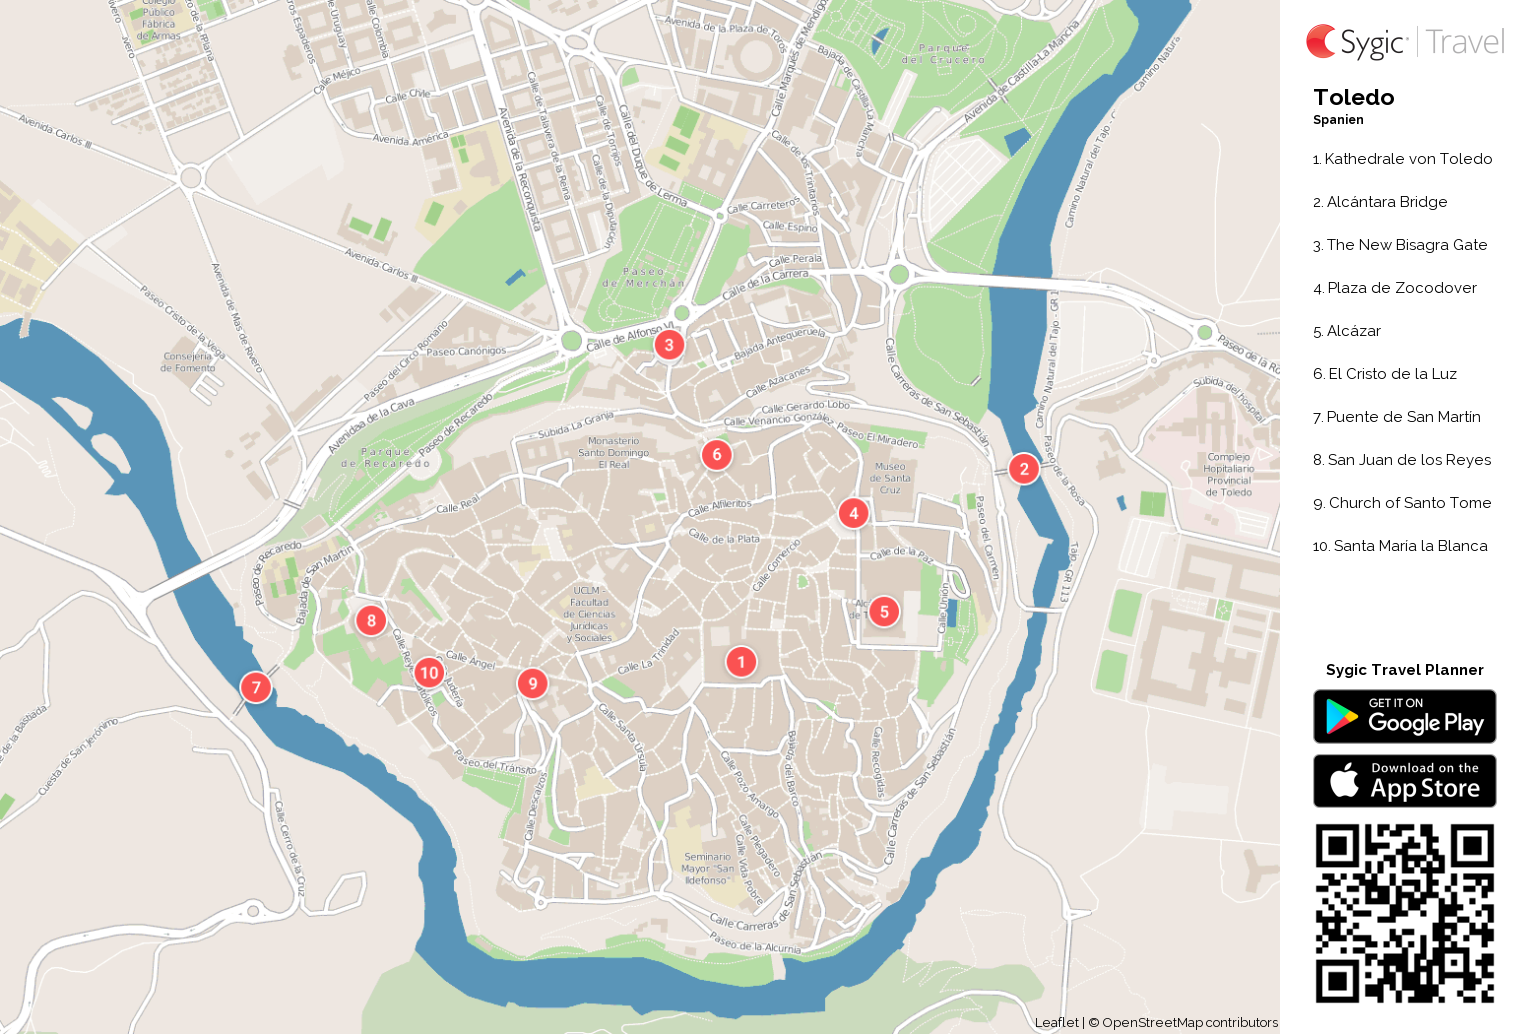 Karte von Toledo ausdrucken | Sygic Travel